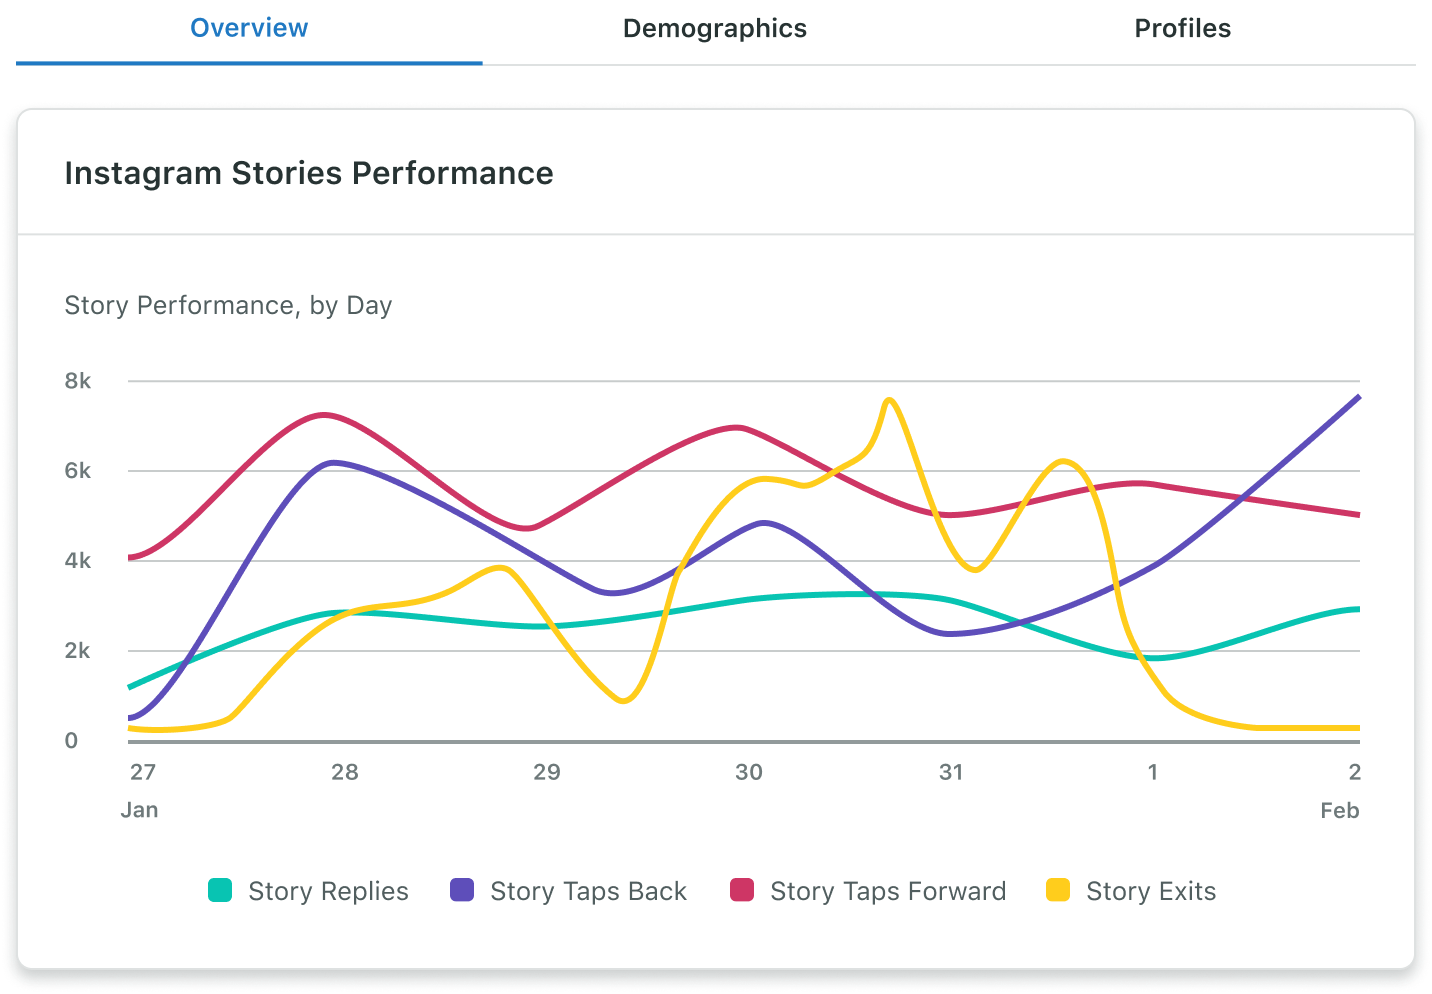 O relatório de perfis empresariais do Instagram do Sprout inclui dados sobre o desempenho diário dos stories, como respostas, toques para voltar, toques para avançar e saídas no intervalo de datas selecionado.